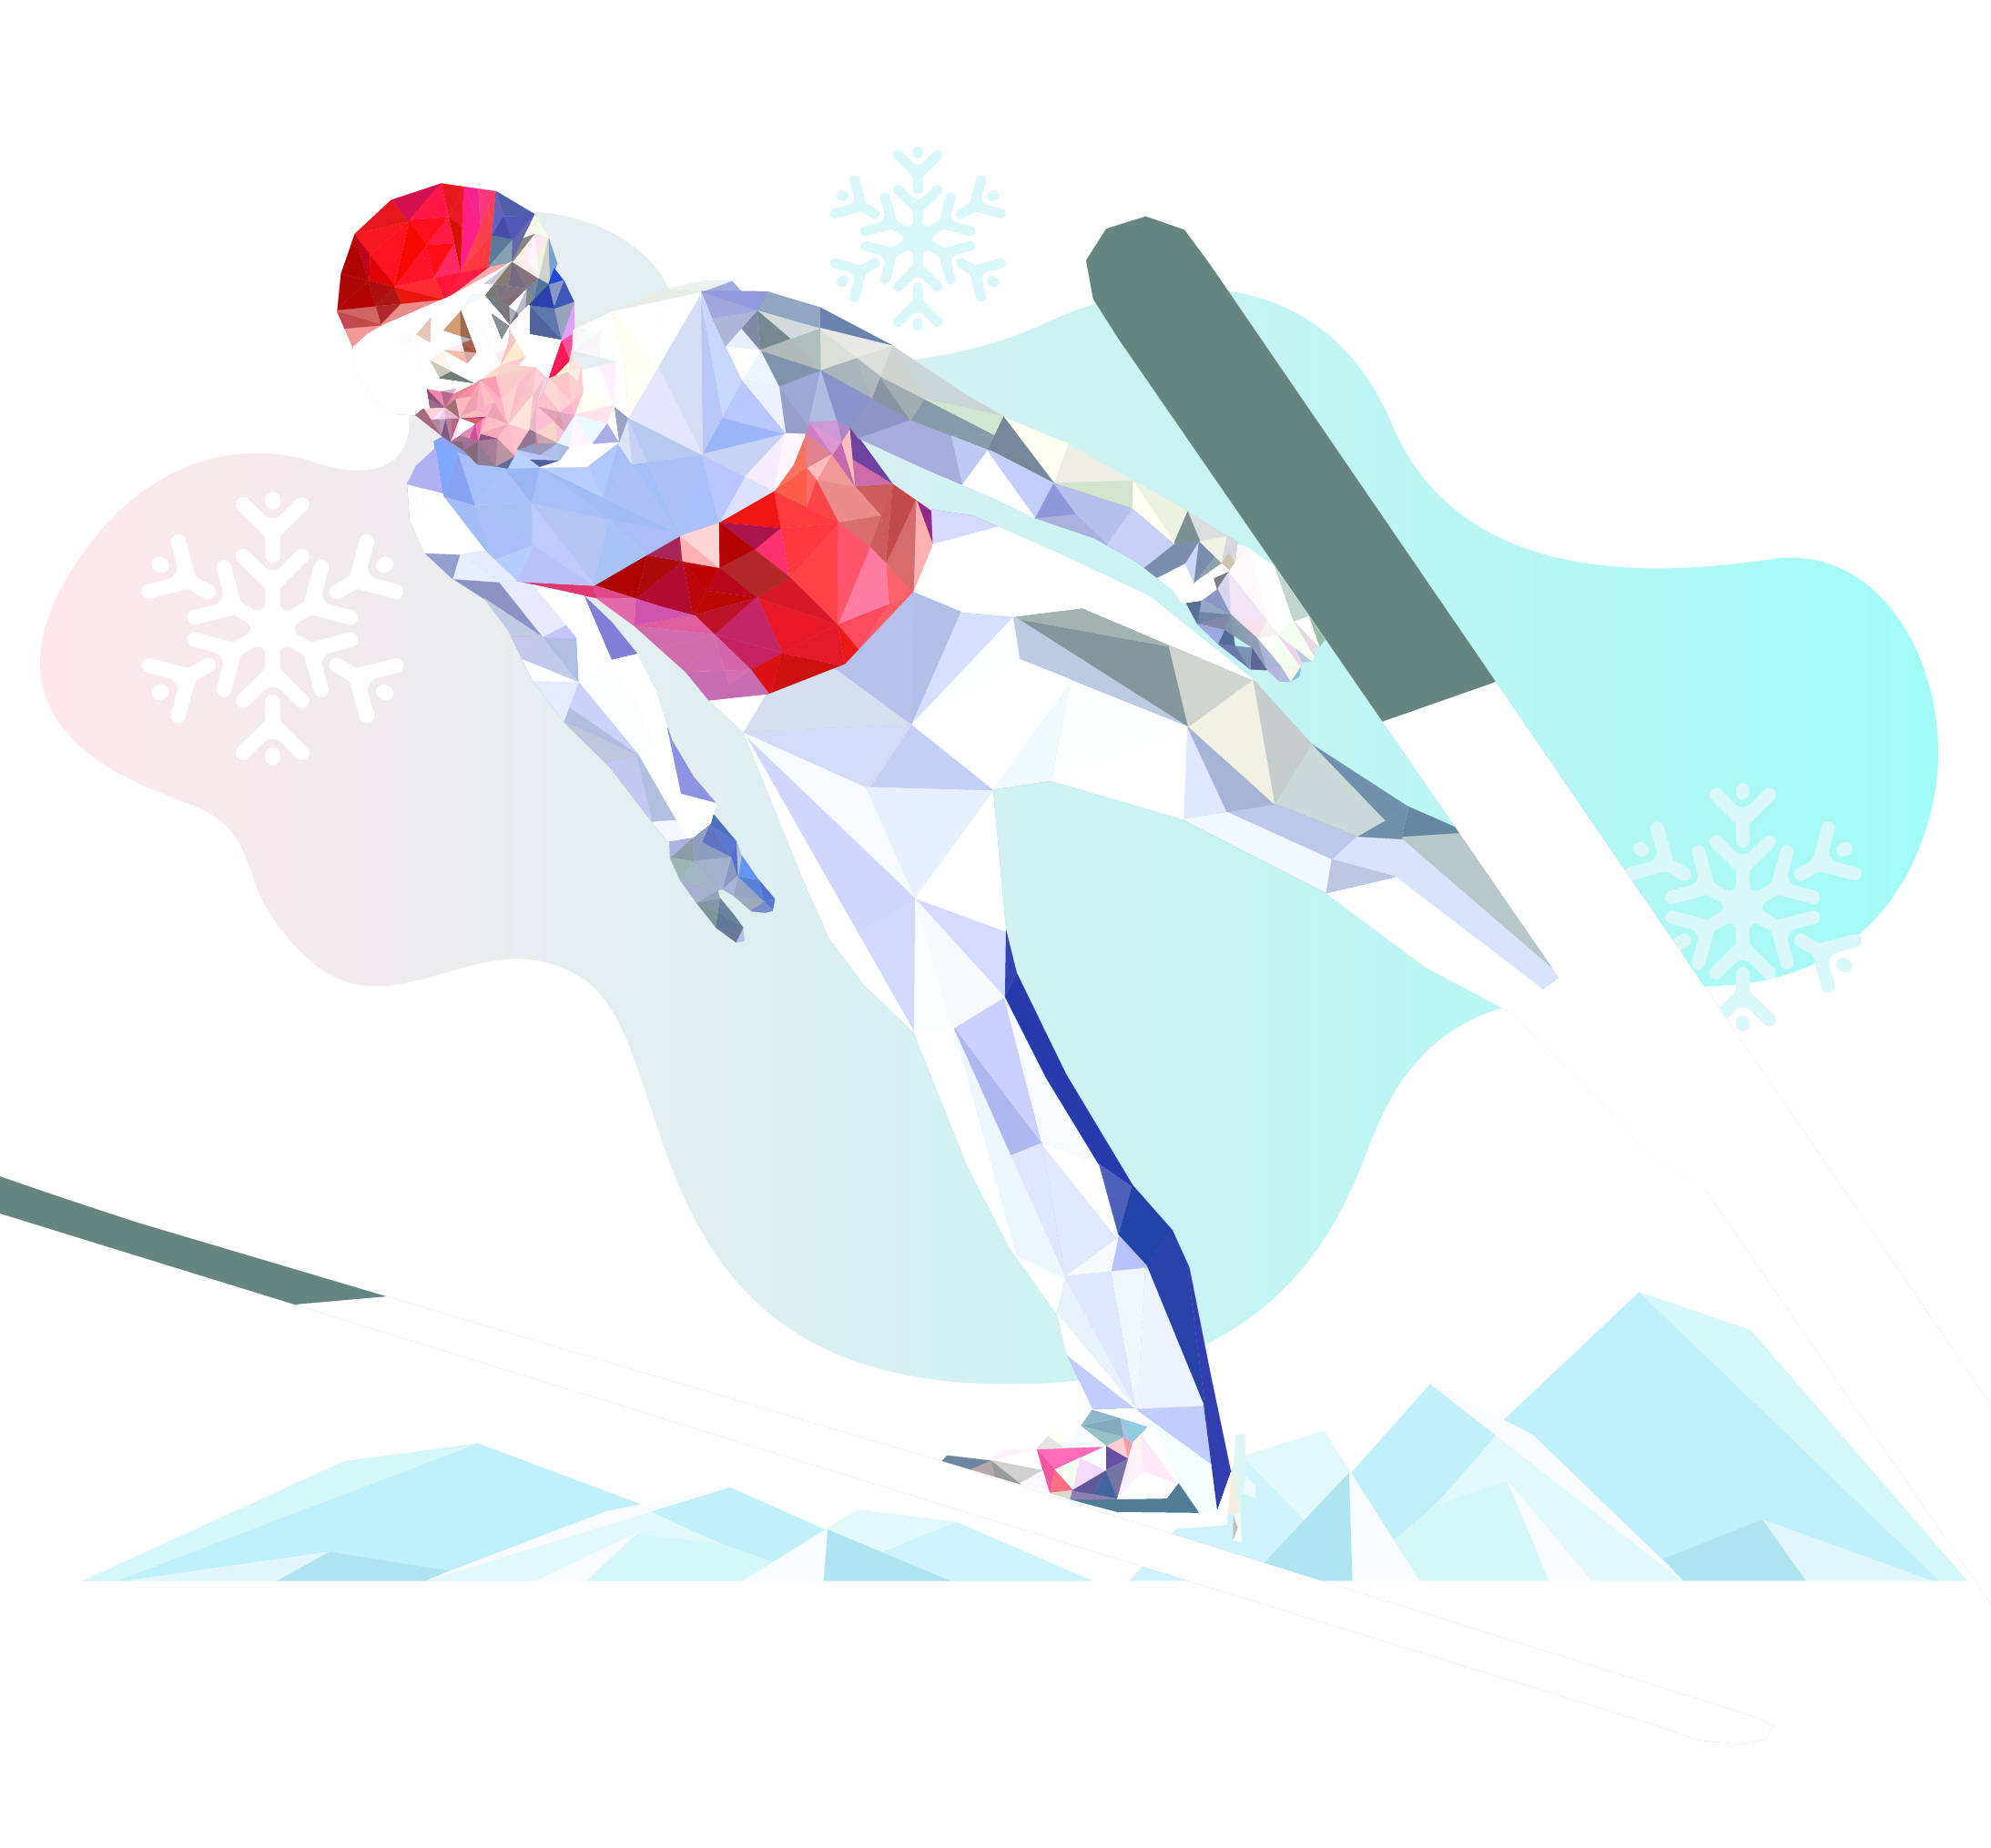 图解北京冬奥项目|"跳台滑雪"——高台跃下,凌空旋转